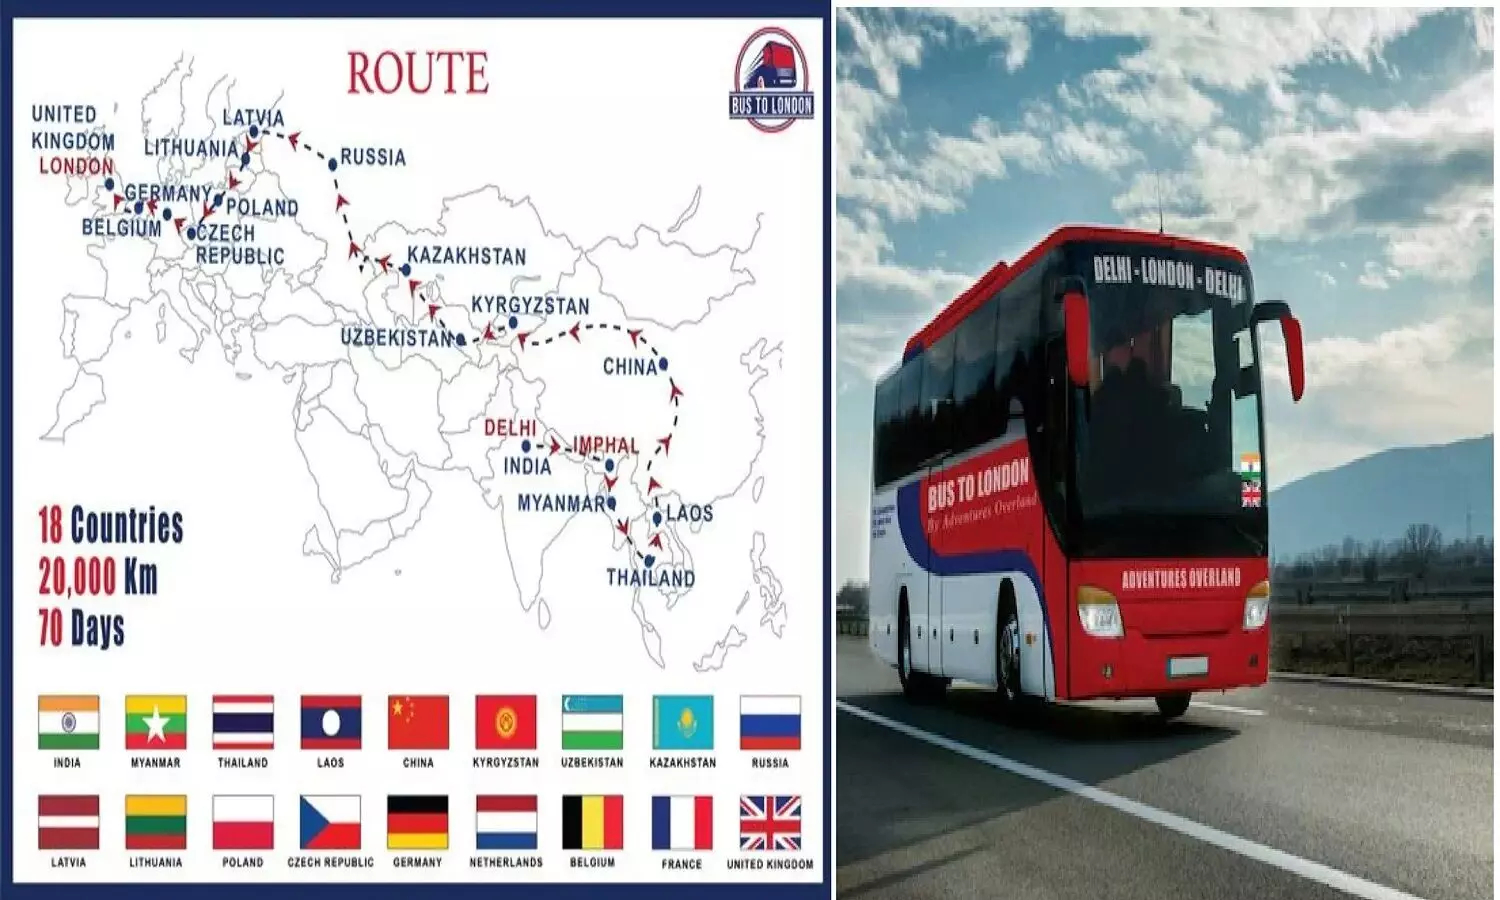 International Bus In India: 70 दिनों में 18 देशों से होकर गुजरती है भारत से ब्रिटेन जाने वाली बस